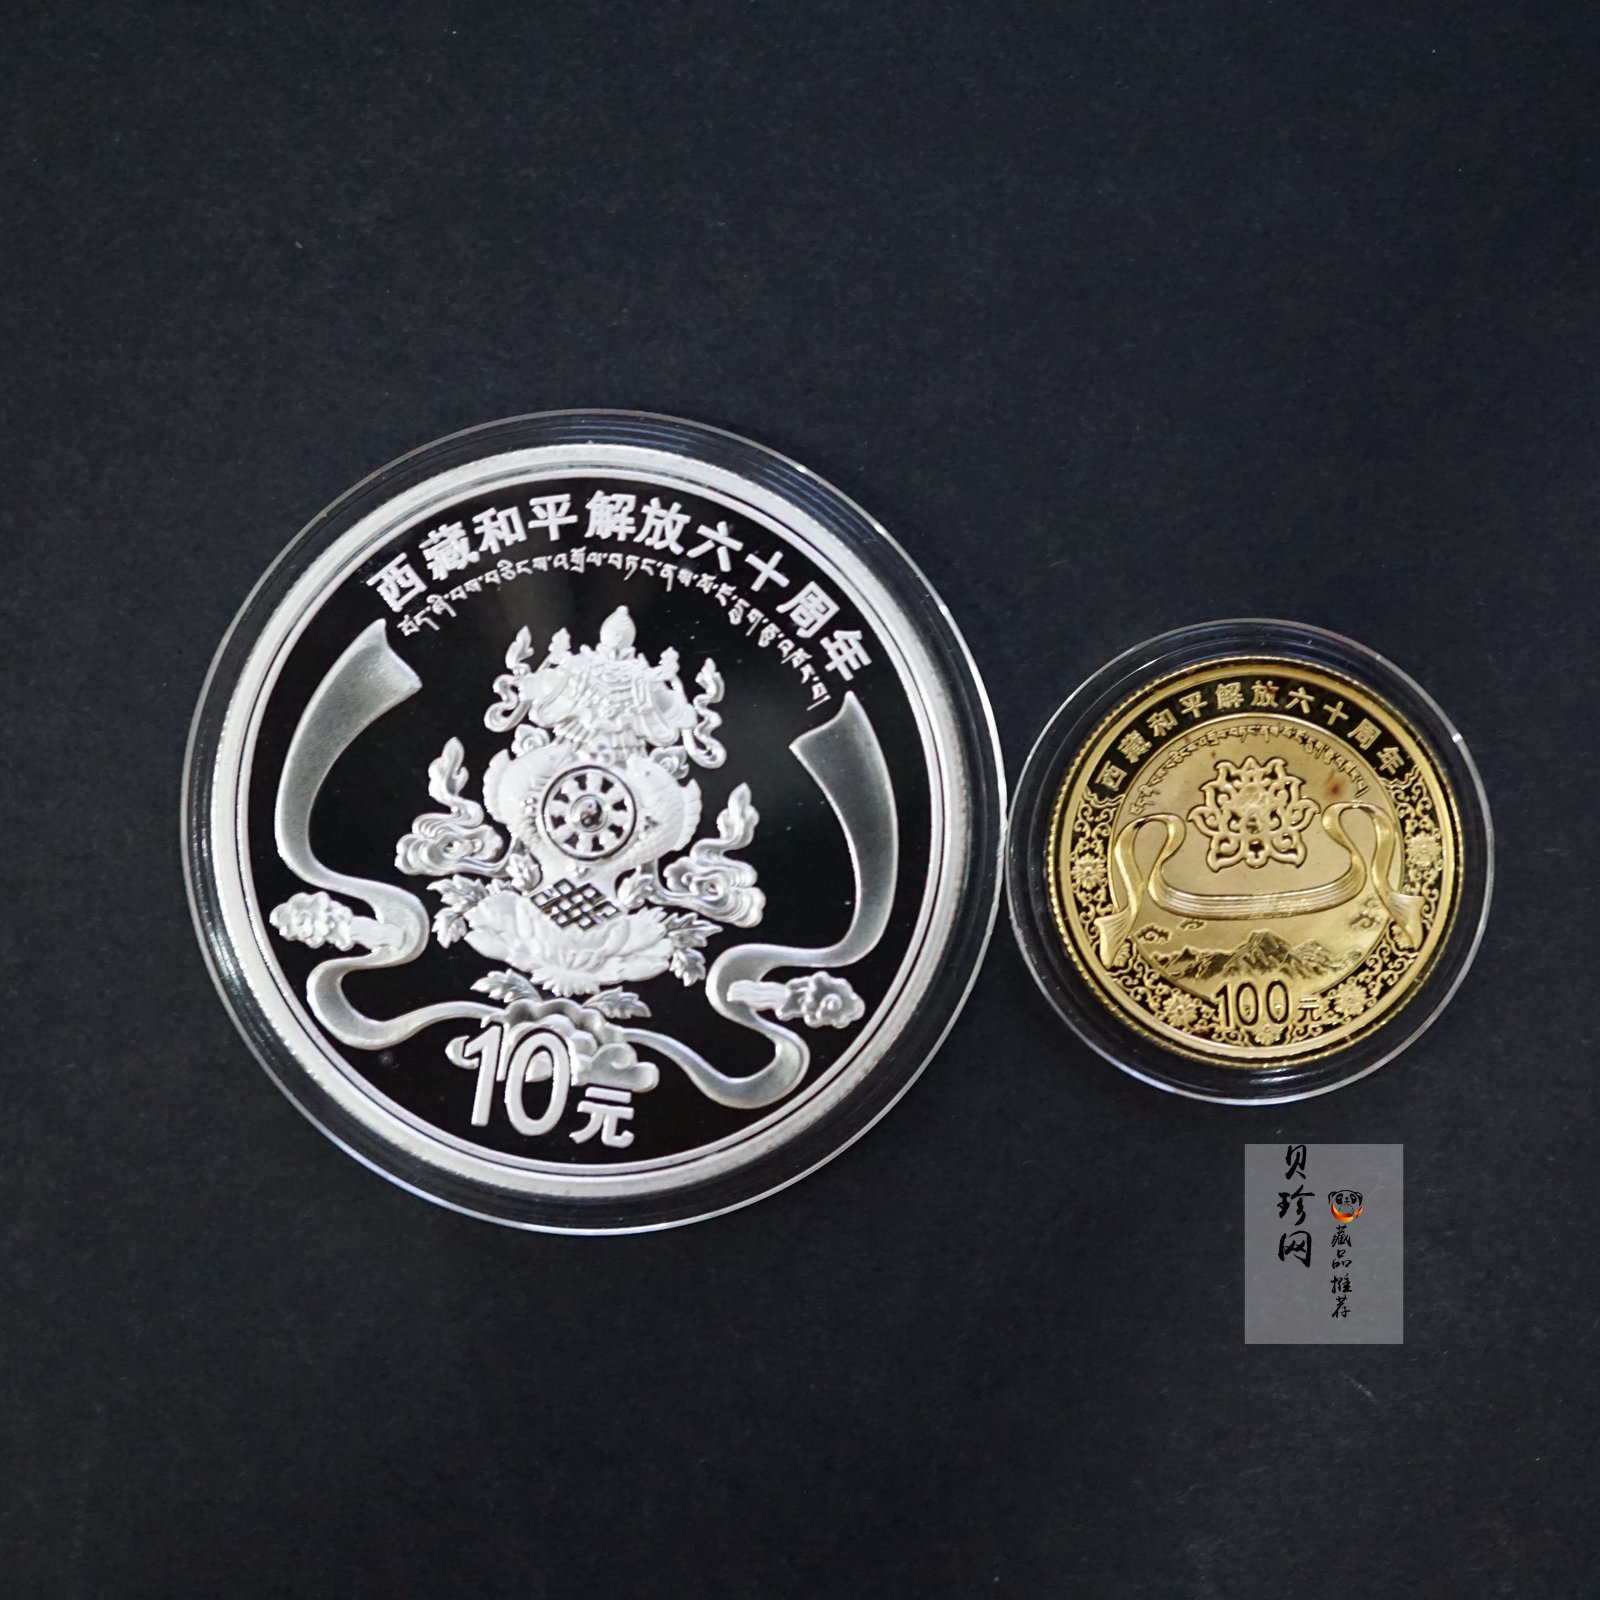 【119170】2011西藏和平解放60周年精制金银币2枚一套